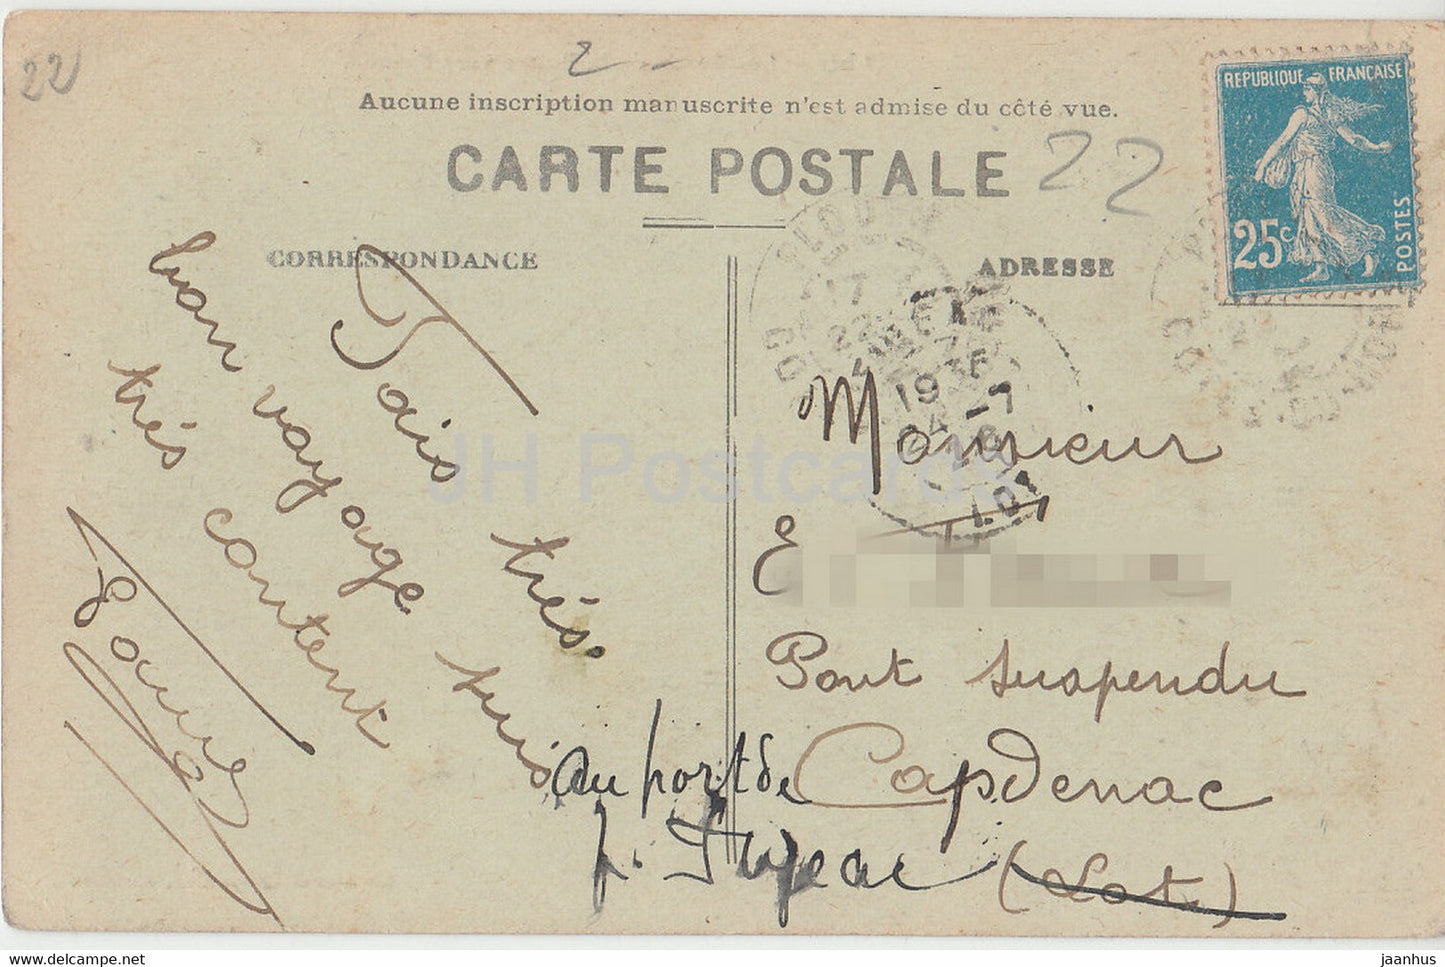 17 bis - Les Bords de la Rance vers Plouer - carte postale ancienne - 1926 - France - oblitéré